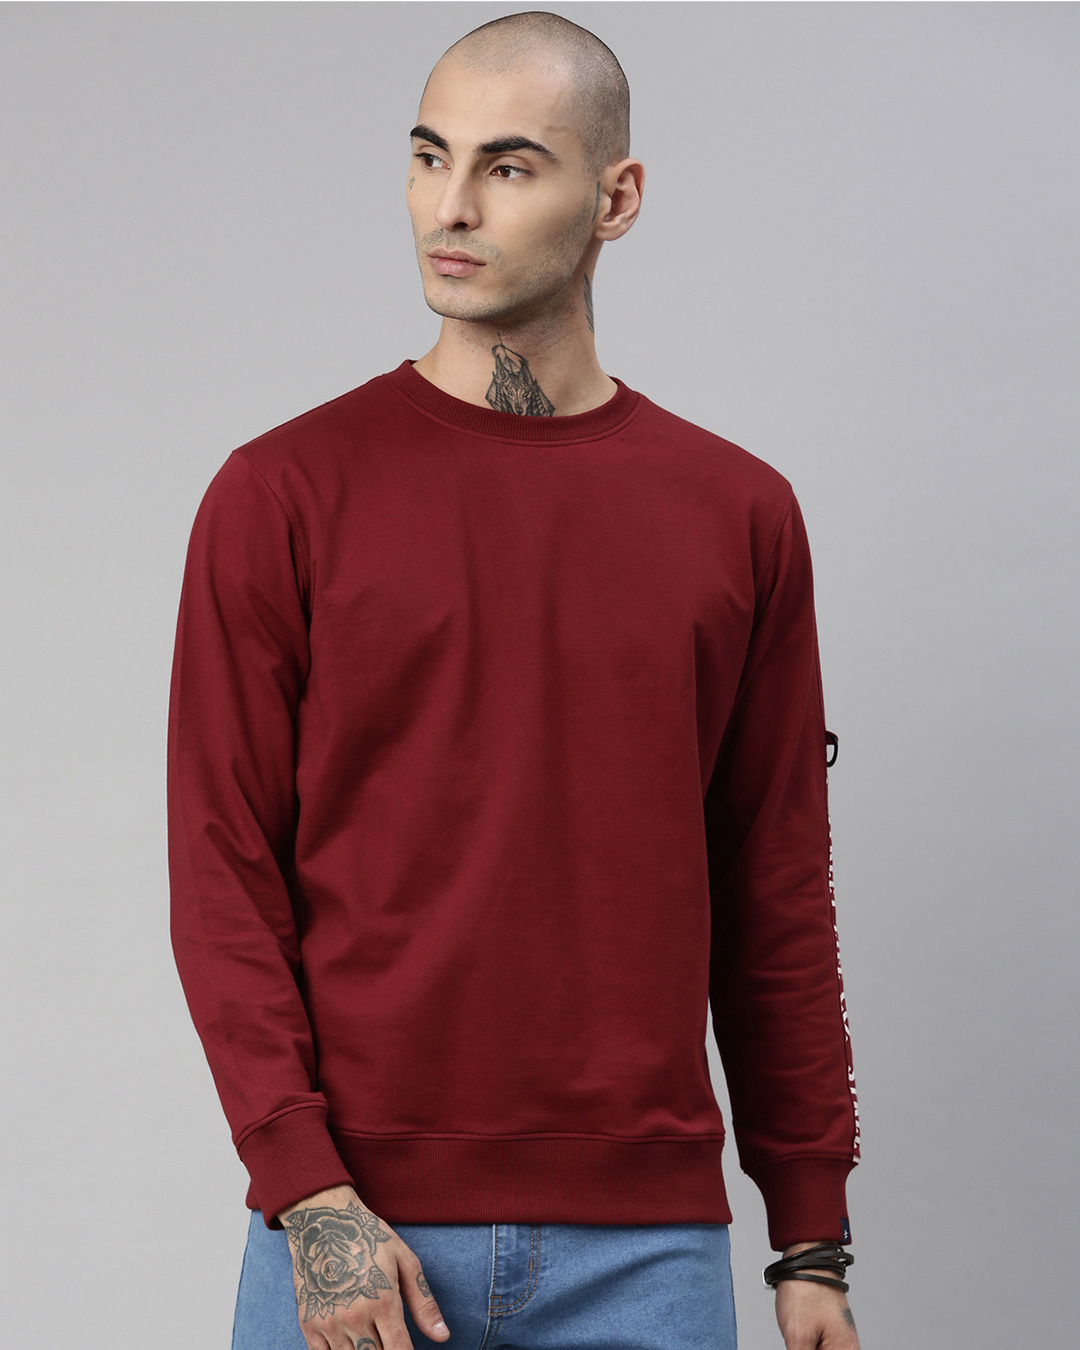 Buy Men's Maroon Solid Full Sleeve Sweatshirt Online at Bewakoof